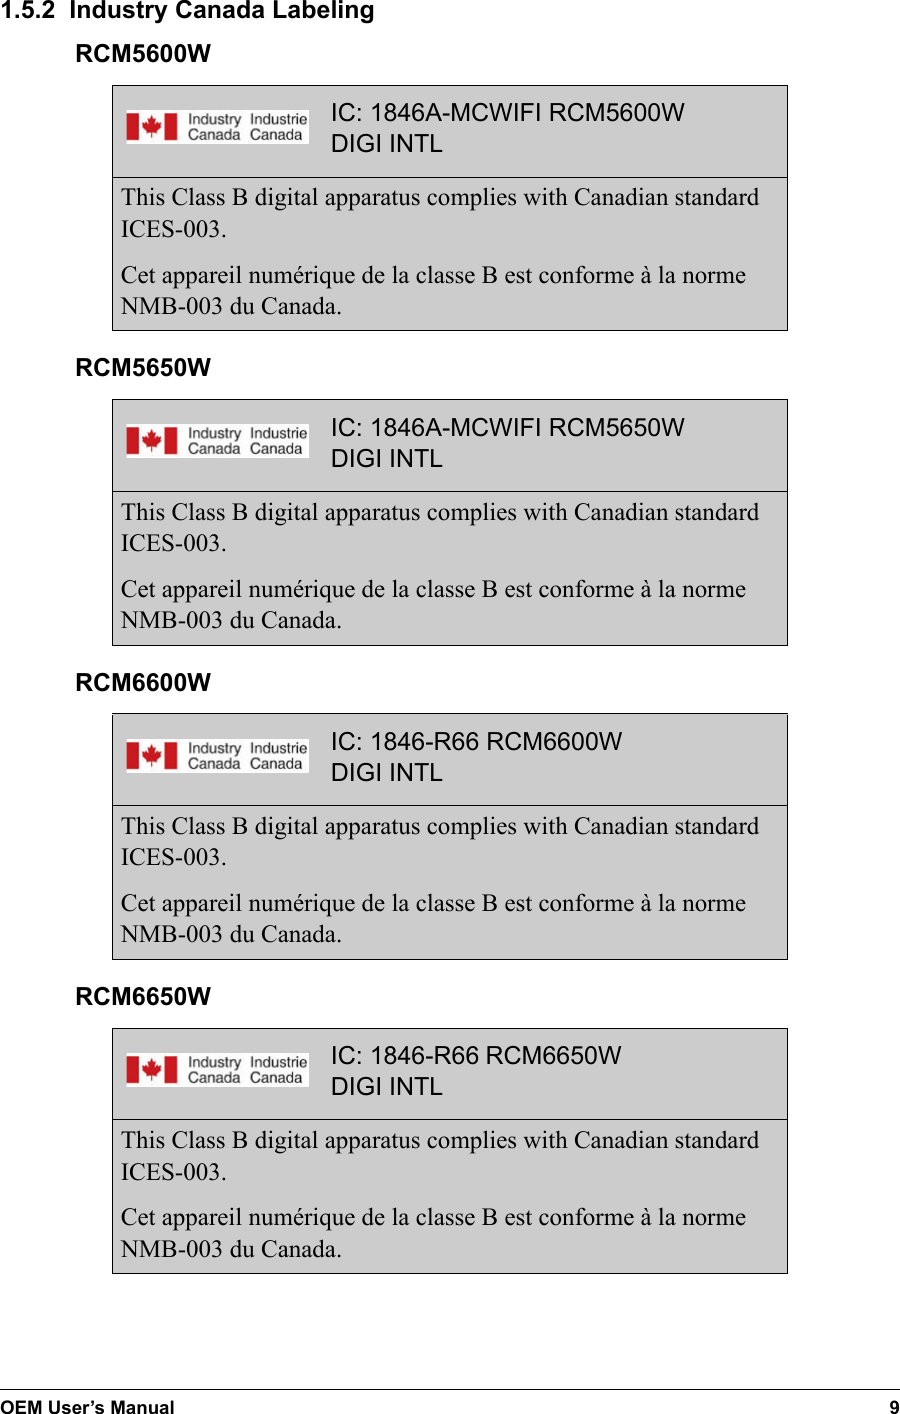 OEM User’s Manual 91.5.2  Industry Canada LabelingIC: 1846A-MCWIFI RCM5600WDIGI INTLThis Class B digital apparatus complies with Canadian standard ICES-003.Cet appareil numérique de la classe B est conforme à la norme NMB-003 du Canada.RCM5600WIC: 1846A-MCWIFI RCM5650WDIGI INTLThis Class B digital apparatus complies with Canadian standard ICES-003.Cet appareil numérique de la classe B est conforme à la norme NMB-003 du Canada.RCM5650WRCM6600WIC: 1846-R66 RCM6600WDIGI INTLThis Class B digital apparatus complies with Canadian standard ICES-003.Cet appareil numérique de la classe B est conforme à la norme NMB-003 du Canada.RCM6650WIC: 1846-R66 RCM6650WDIGI INTLThis Class B digital apparatus complies with Canadian standard ICES-003.Cet appareil numérique de la classe B est conforme à la norme NMB-003 du Canada.